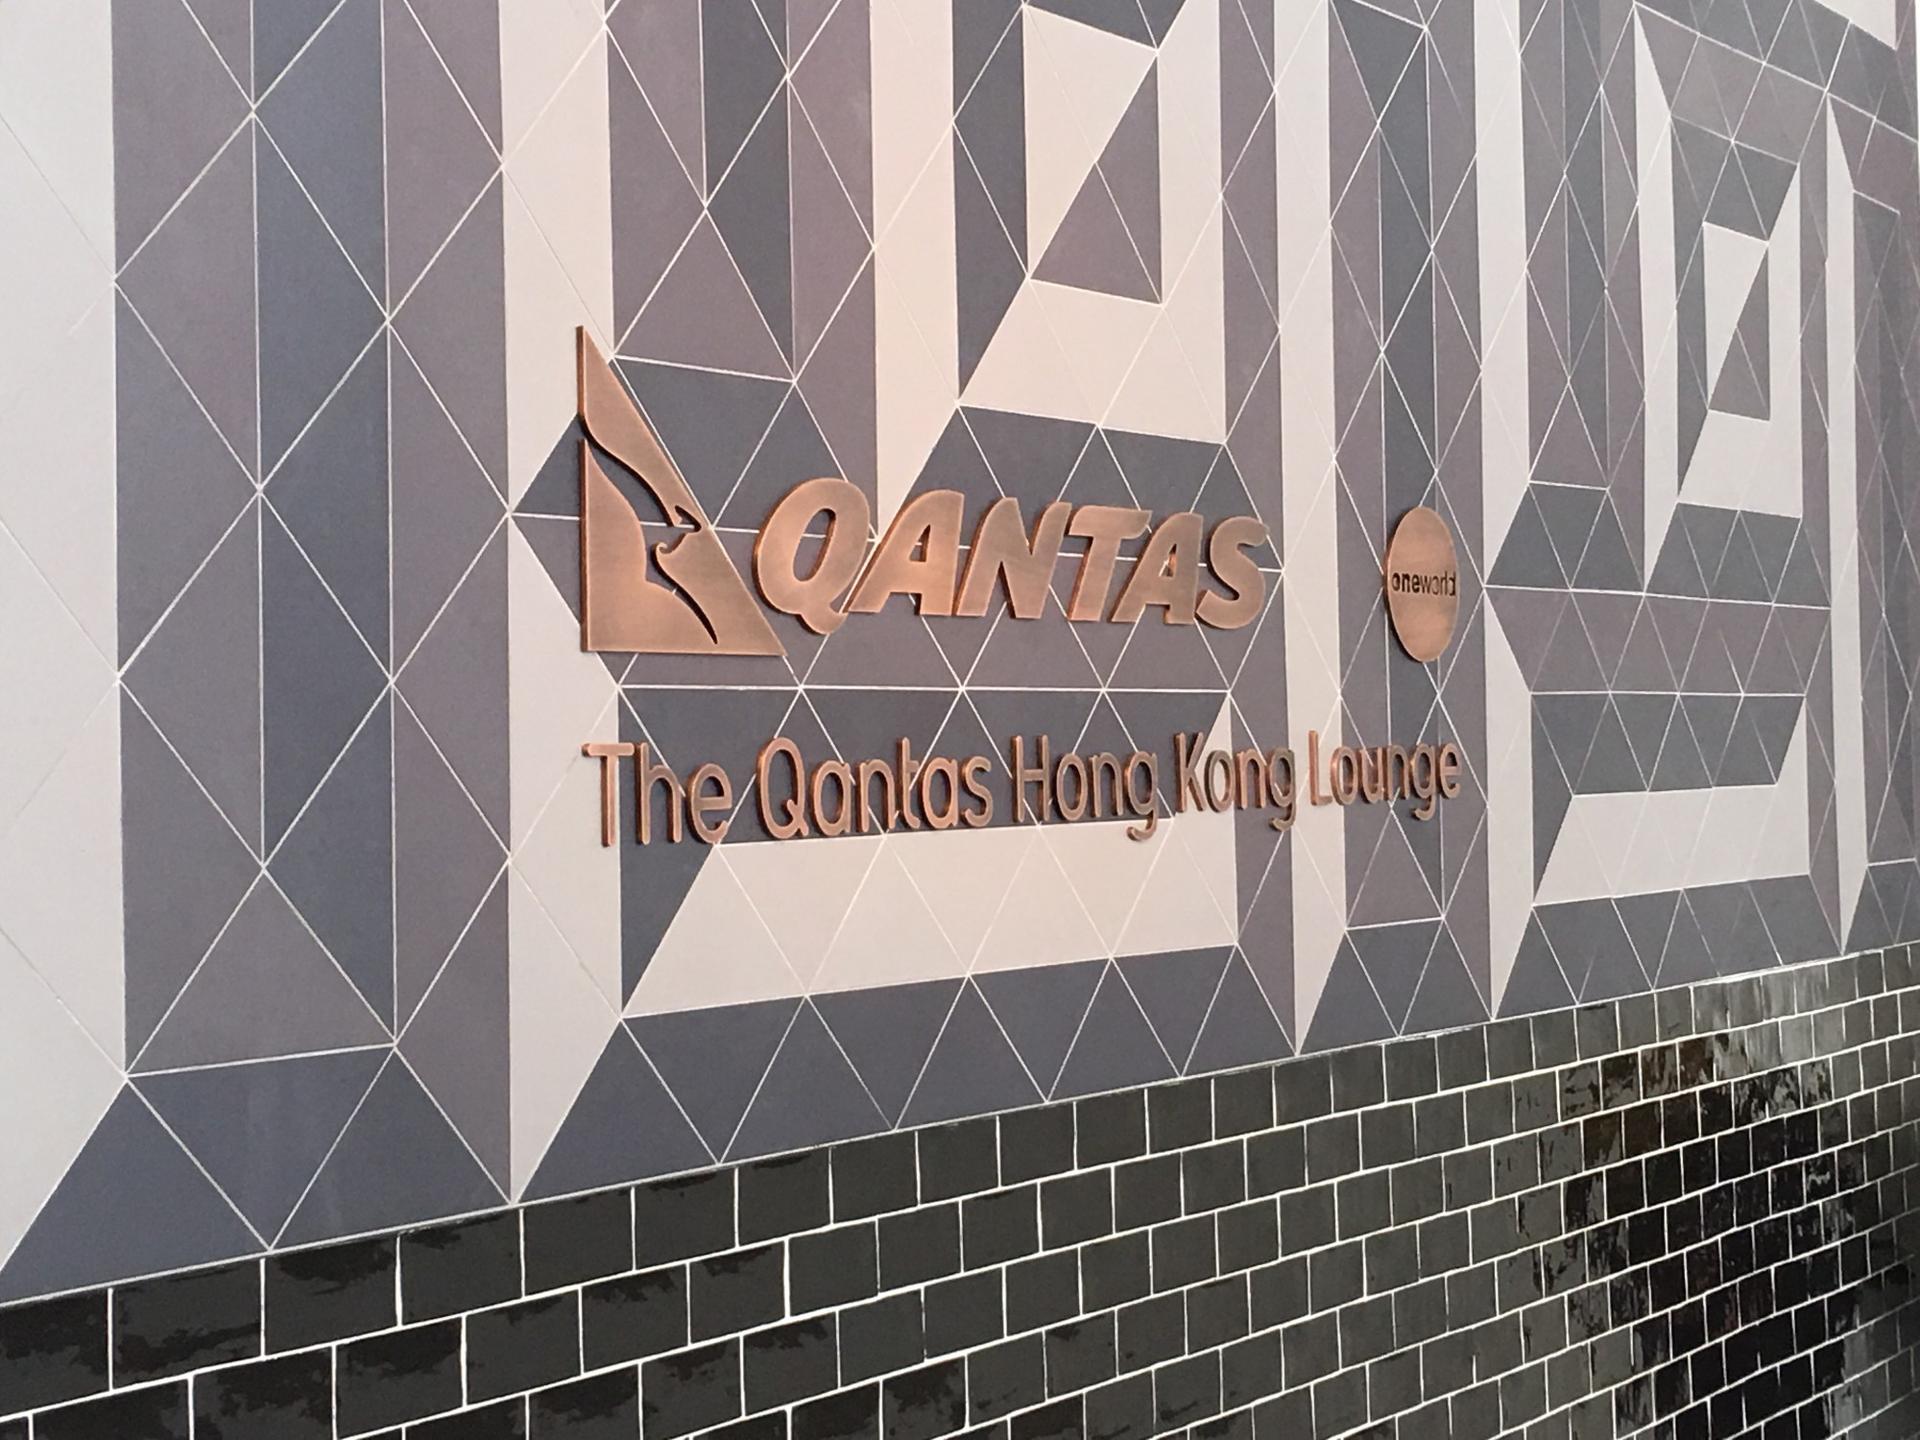 The Qantas Hong Kong Lounge image 69 of 99